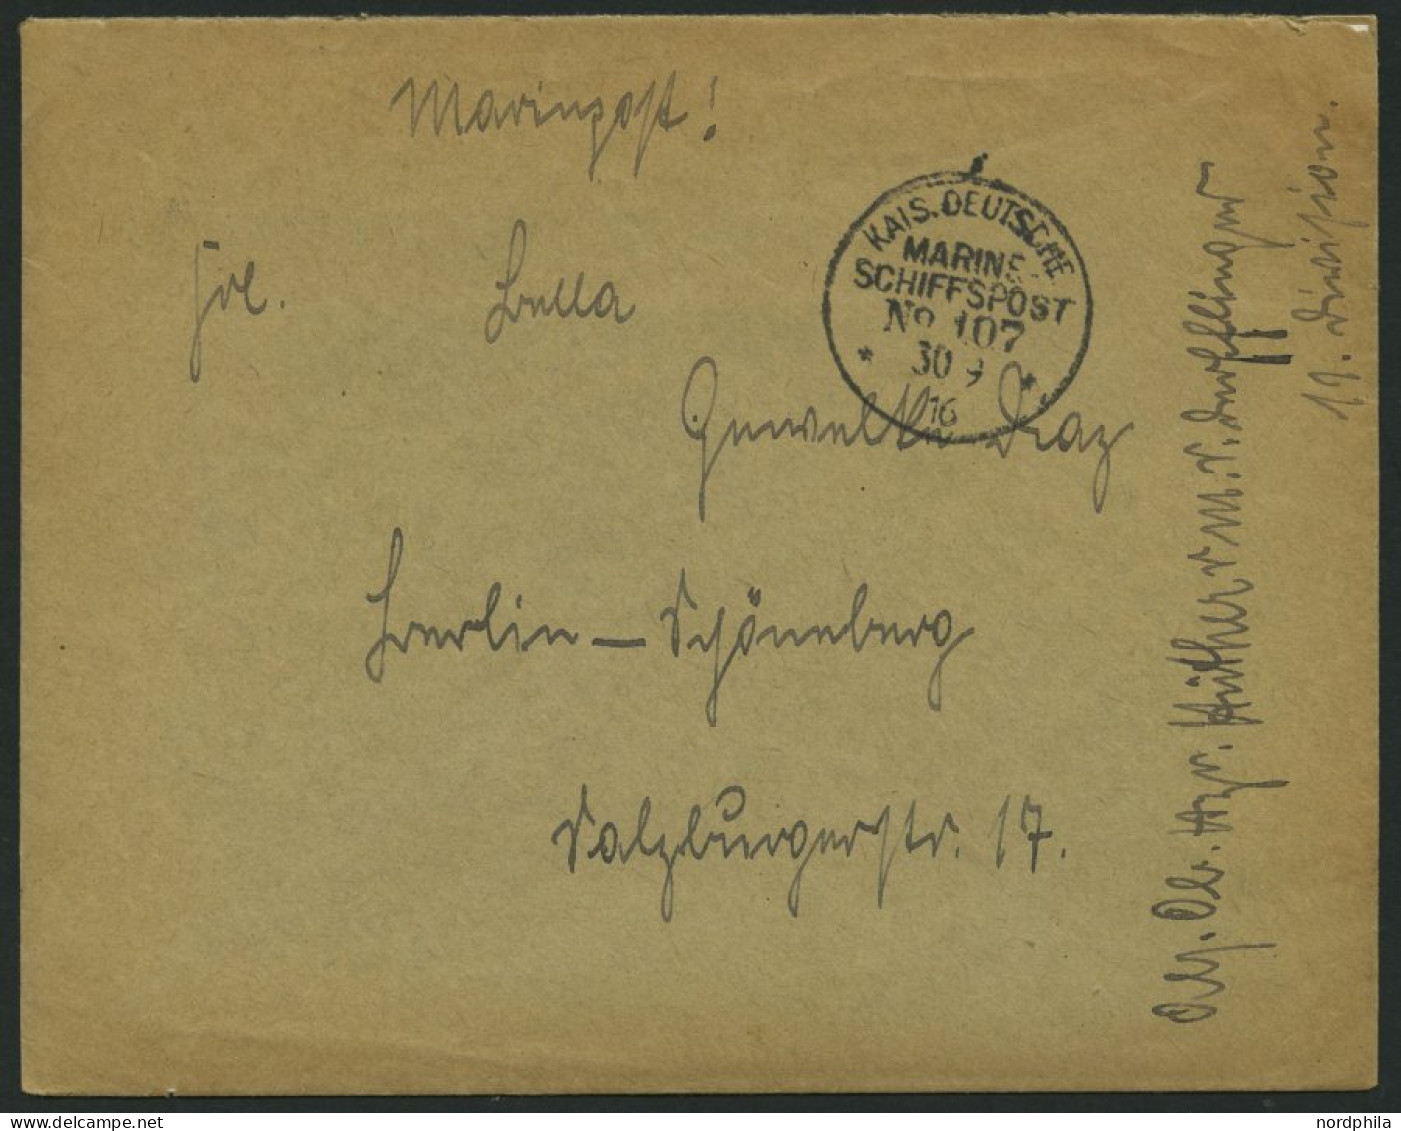 MSP VON 1914 - 1918 107 (Schlachtkreuzer DERFFLINGER), 30.9.1916, Feldpostbrief Von Bord Der Derfflinger, Pracht - Maritime